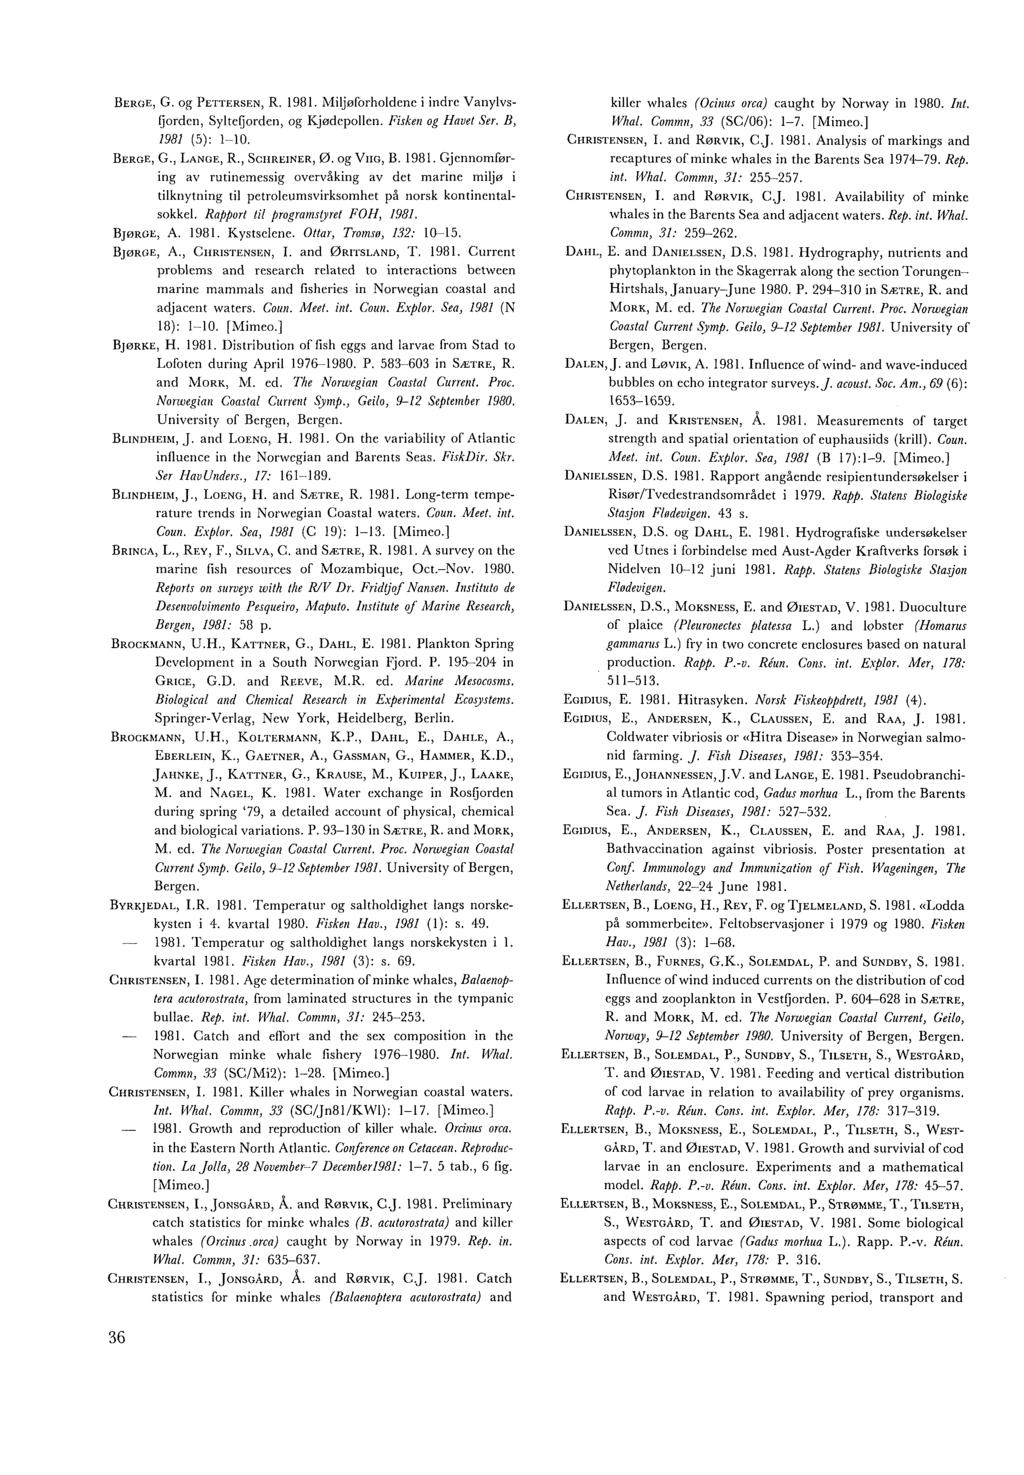 BERGE, G. og PETTERSEN, R. 1981. Miljøforholdene i indre Vanylvs- Ijordcn, Sylteljorden, og Kjødepollen. Fisken og Havet Ser. B, 1981 (5): 1-10, BERGE, G., LANGE, R., SCIIREINER, 0. og VIIG, B. 1981. Gjcnnomføring av rutinemessig overvåking av det marine miljer i tilknytning til pctroleumsvirksomhet på norsk kontineiitalsokkel.